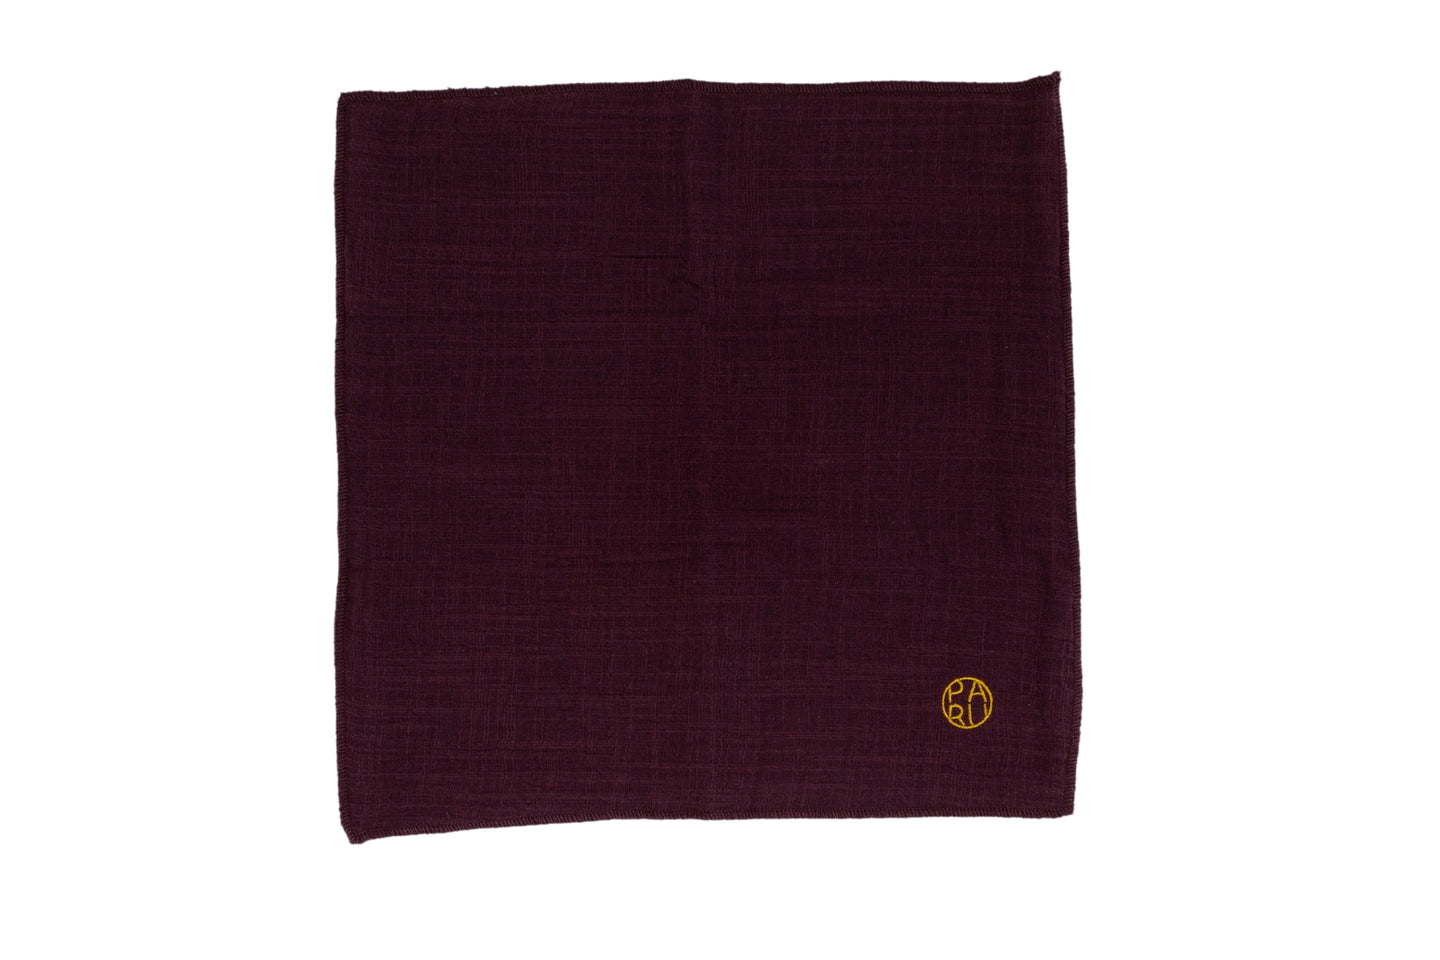 PARU Gong Fu Tea Towel - Dark Brown